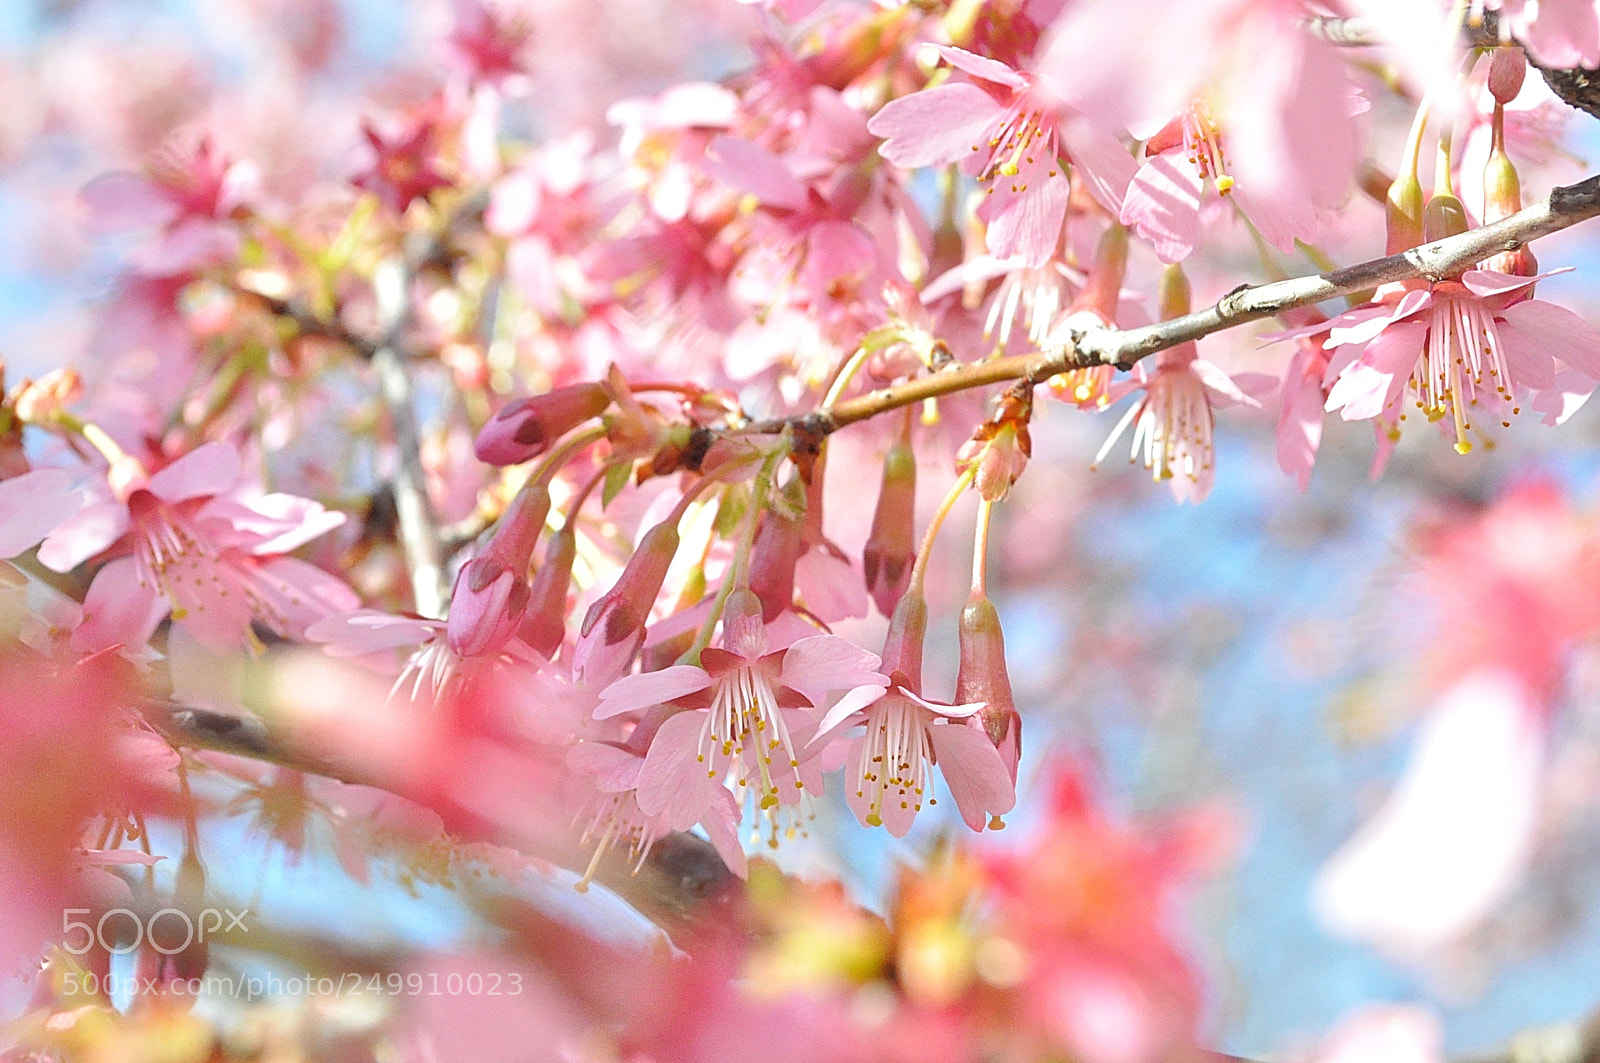 Nikon D5000 sample photo. Beautiful spring photography